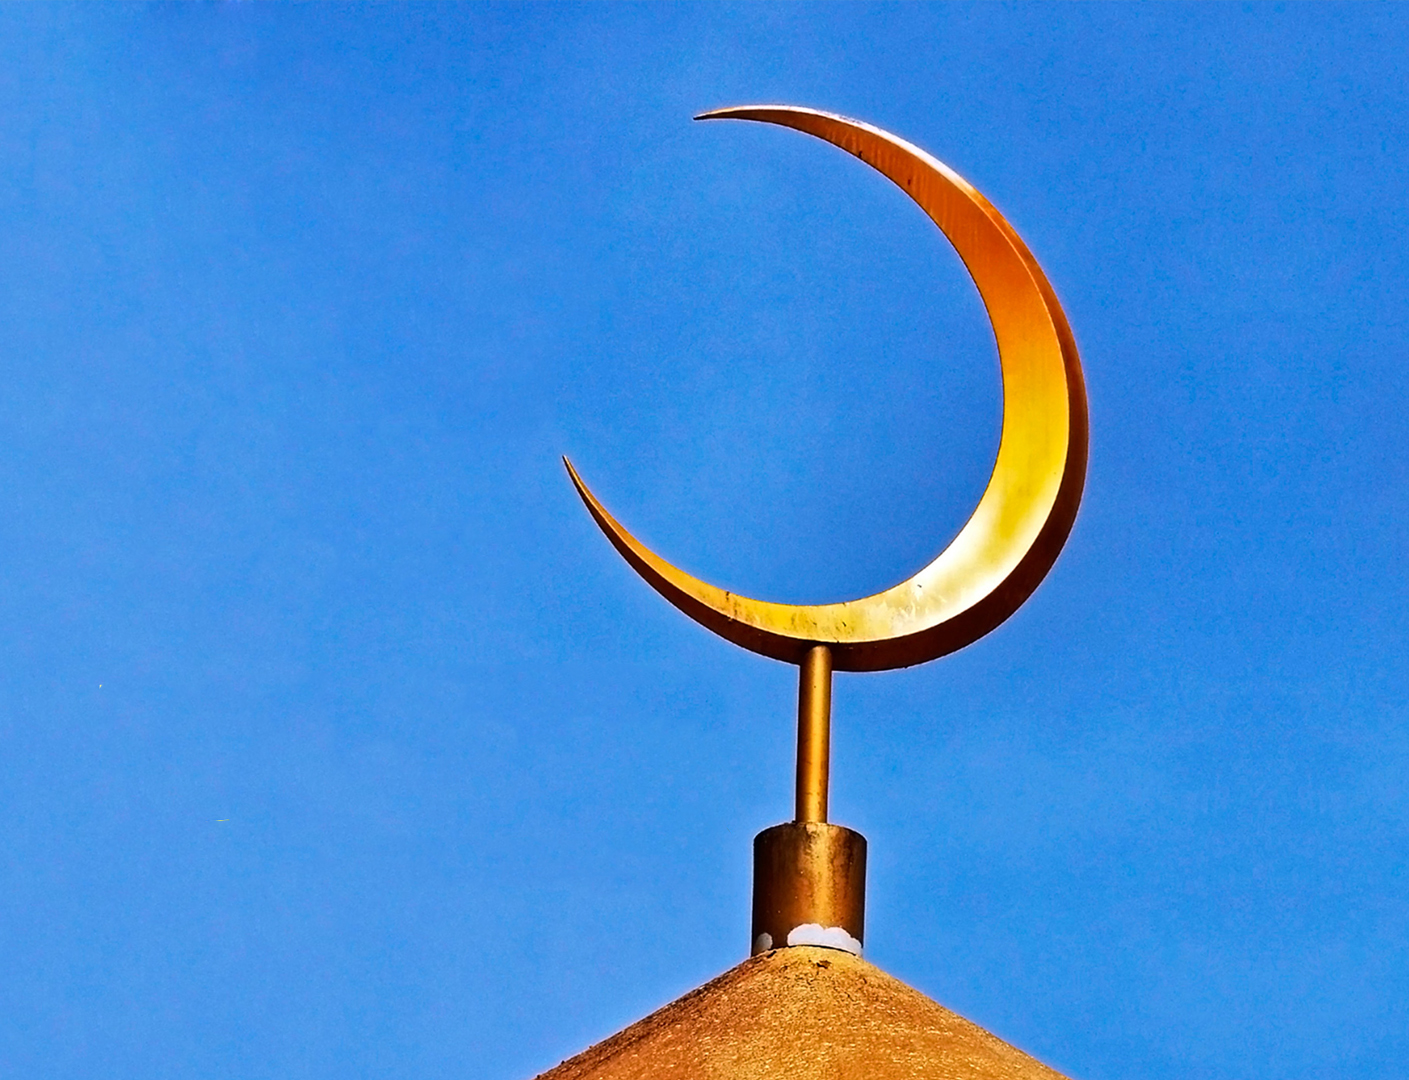 Являются ли полумесяц и звезда символами Ислама?